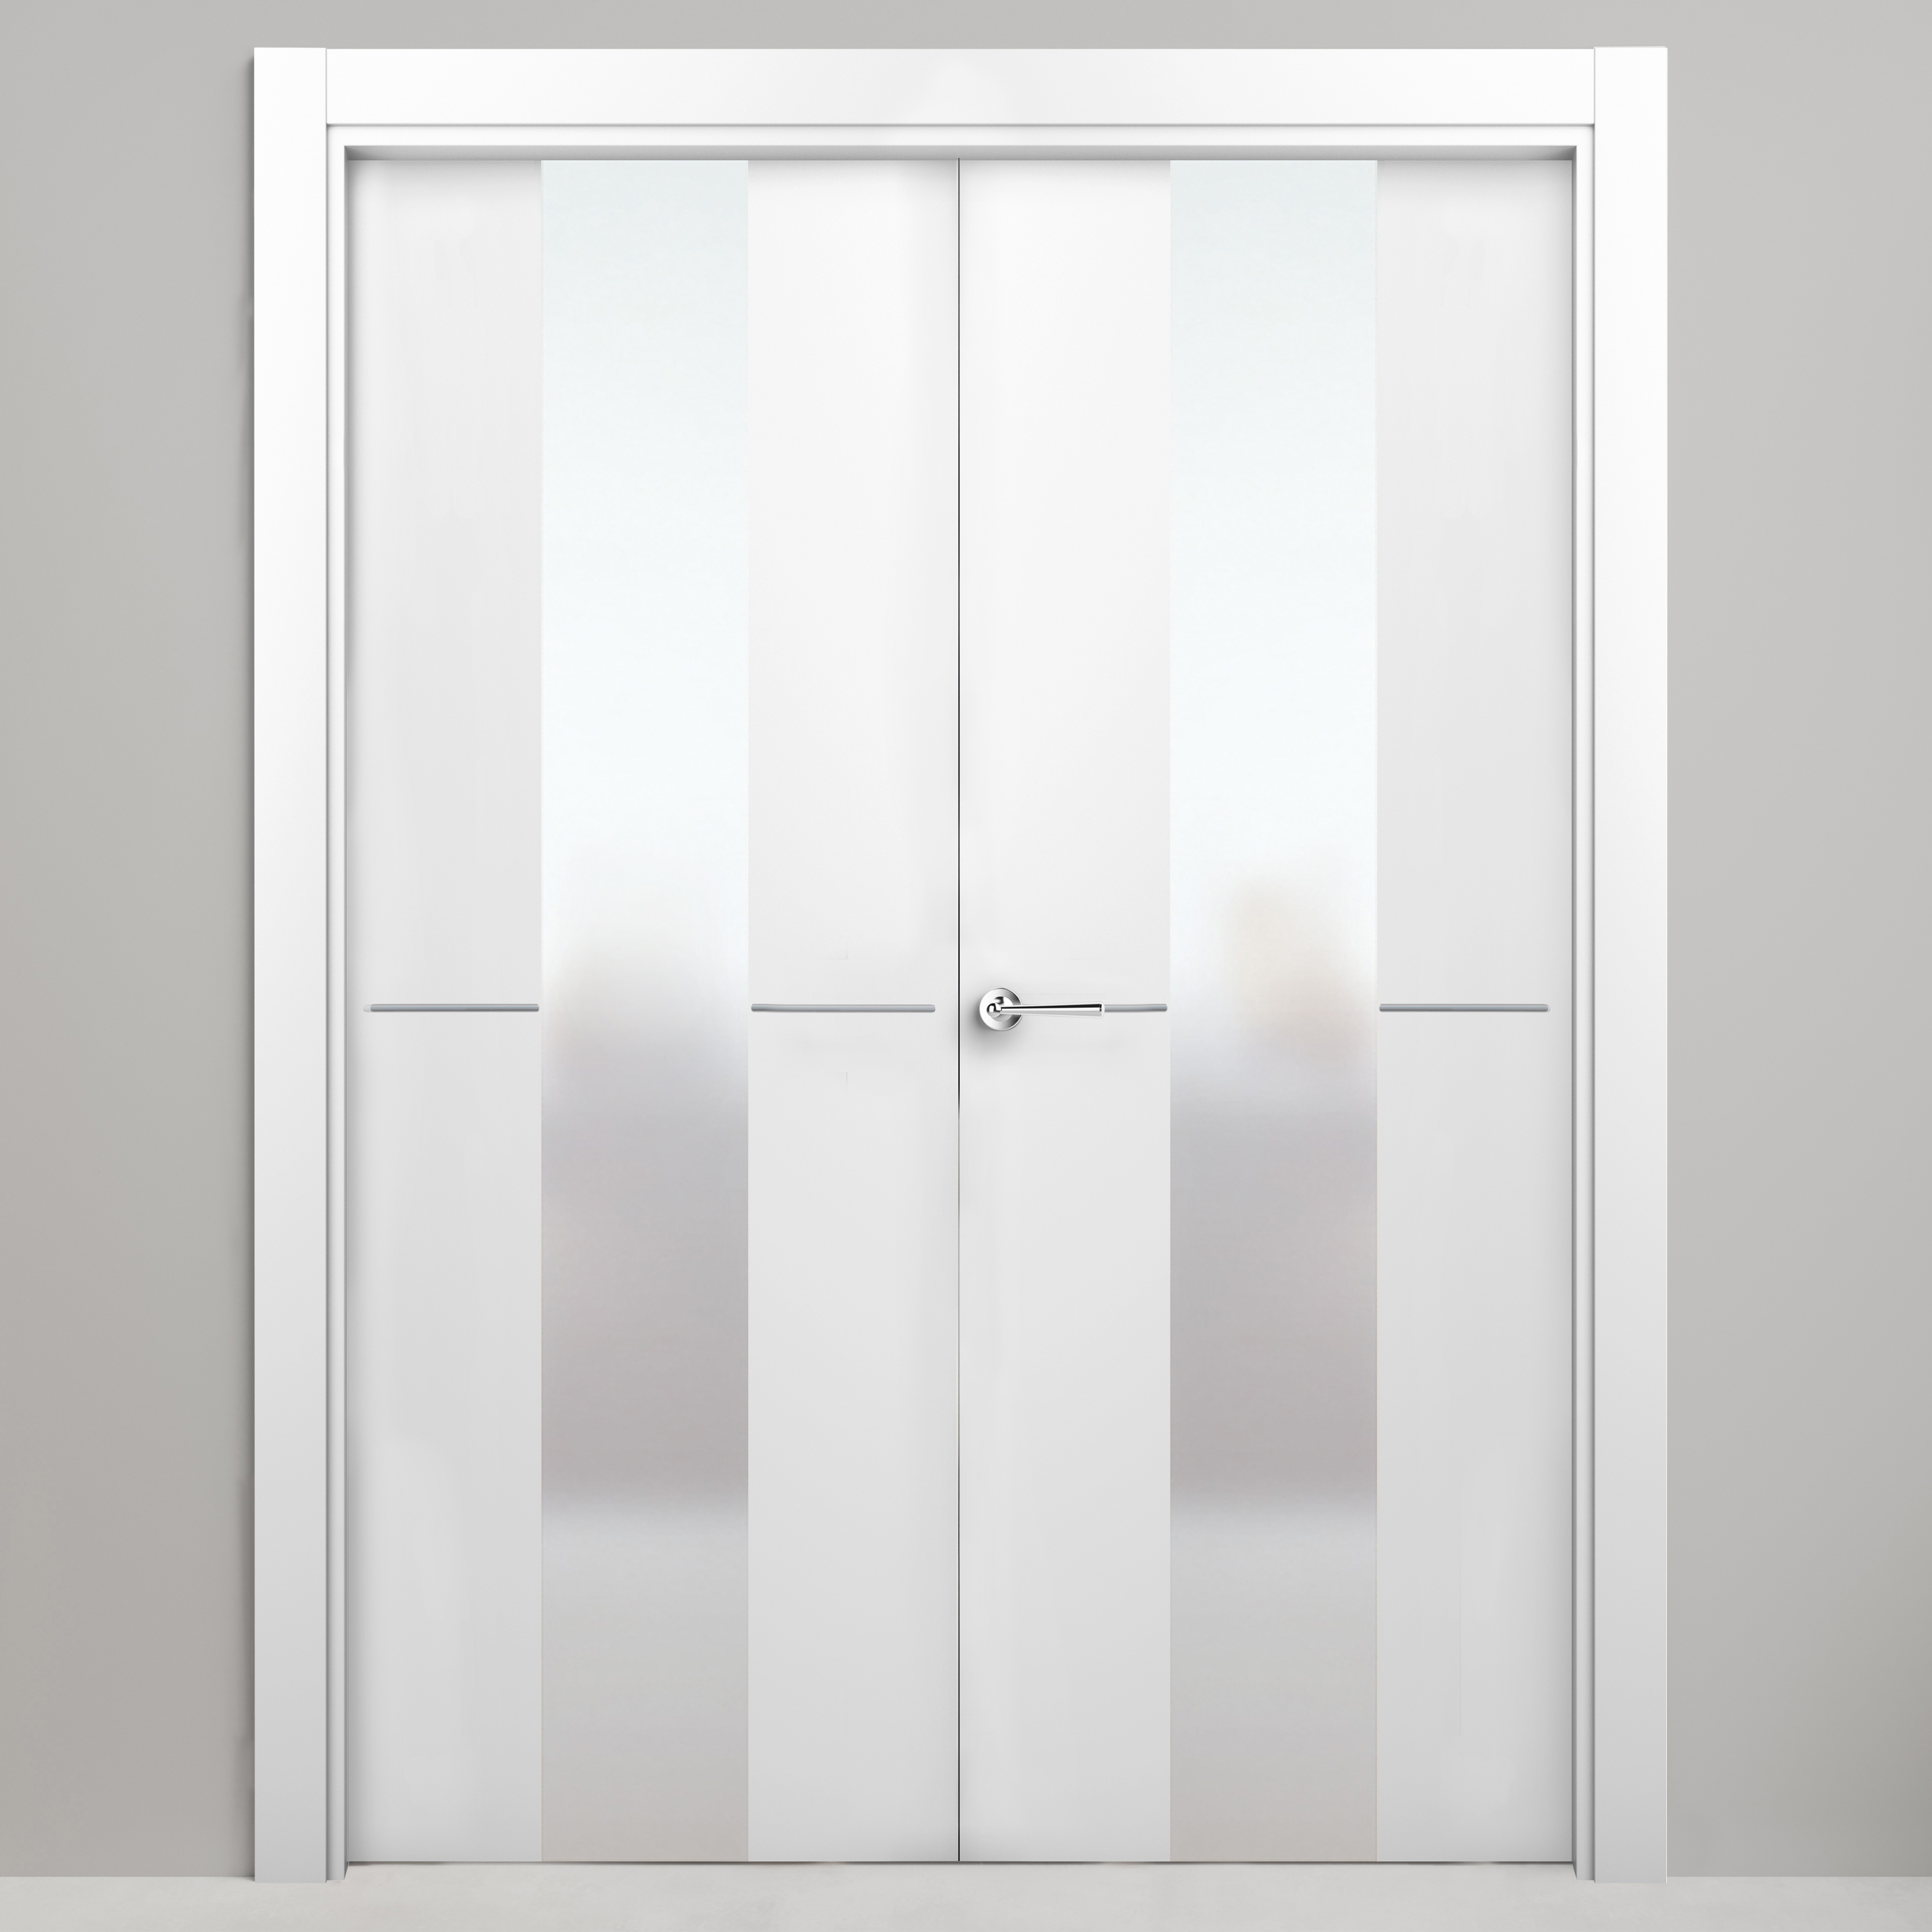 Puerta abatible paris blanca premium apertura derecha de 145 cm